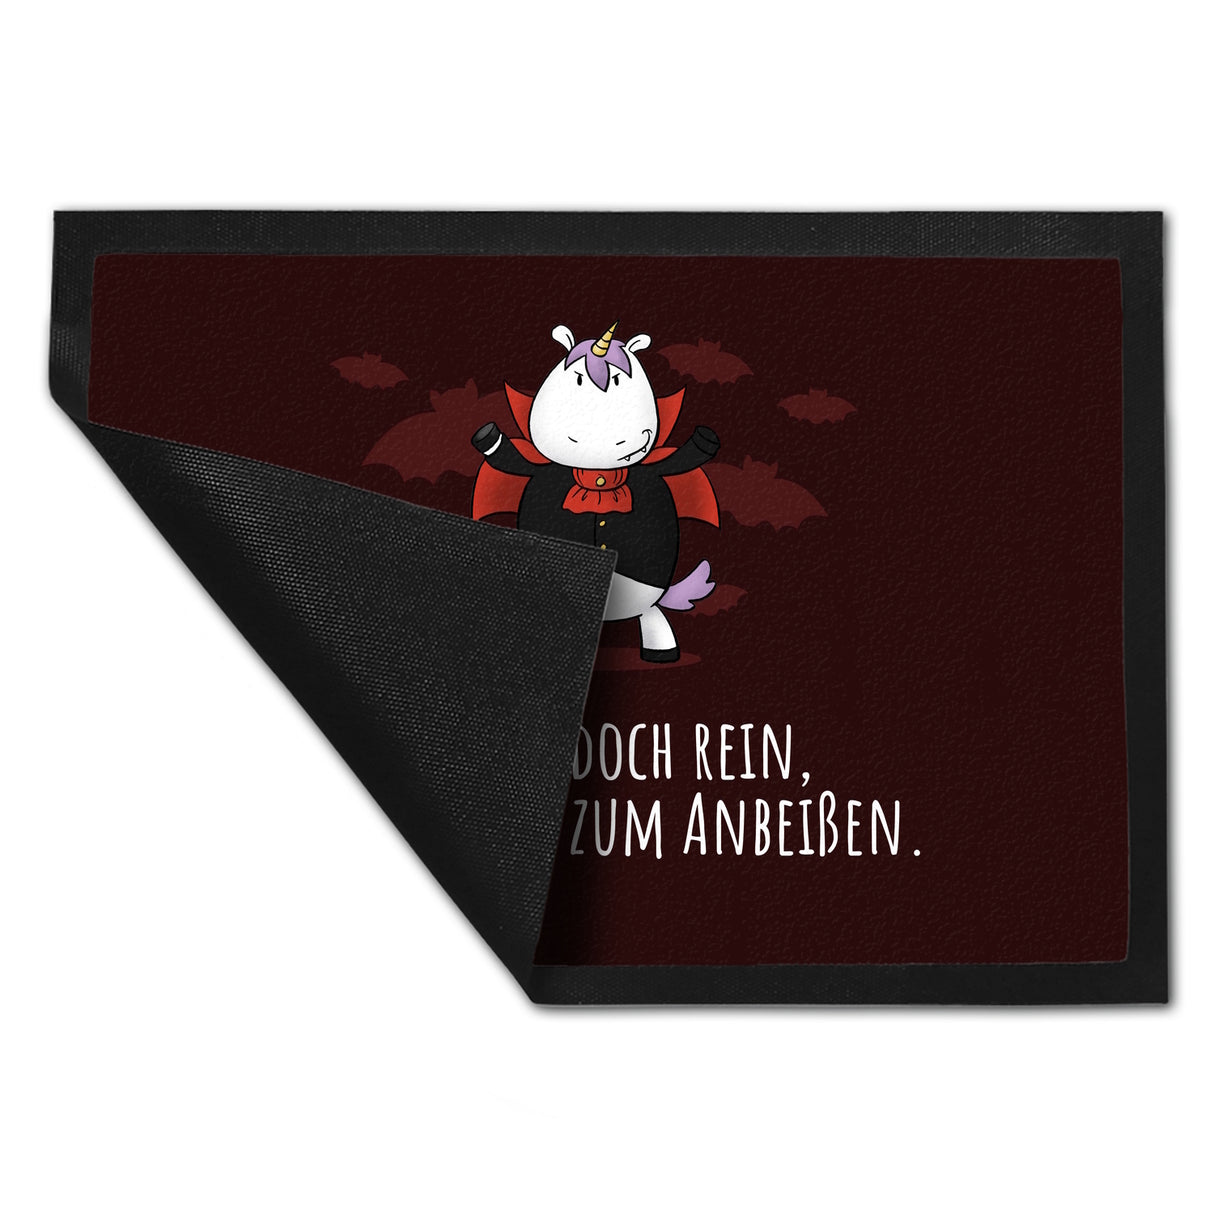 Einhorn-Geist Fußmatte in 35x50 cm mit Spruch Nicht faul mache geistige Arbeit